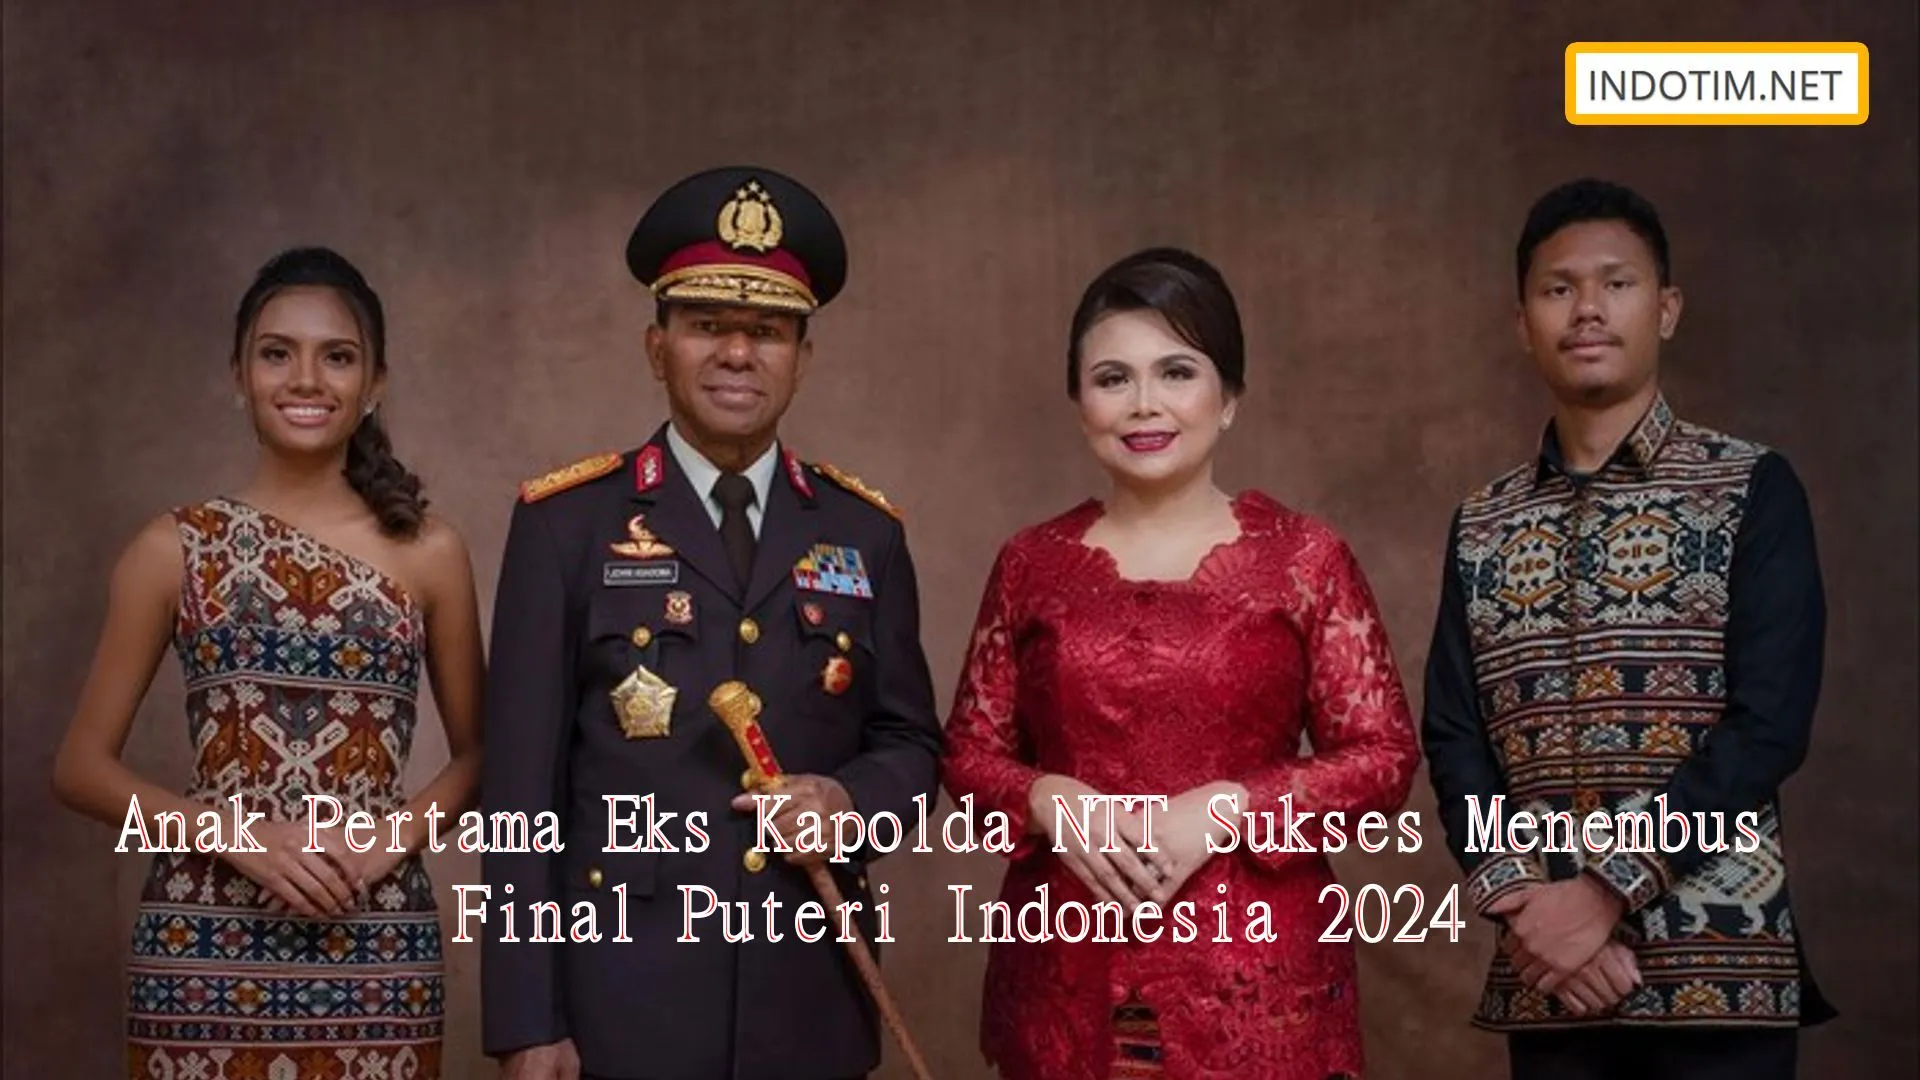 Anak Pertama Eks Kapolda NTT Sukses Menembus Final Puteri Indonesia 2024